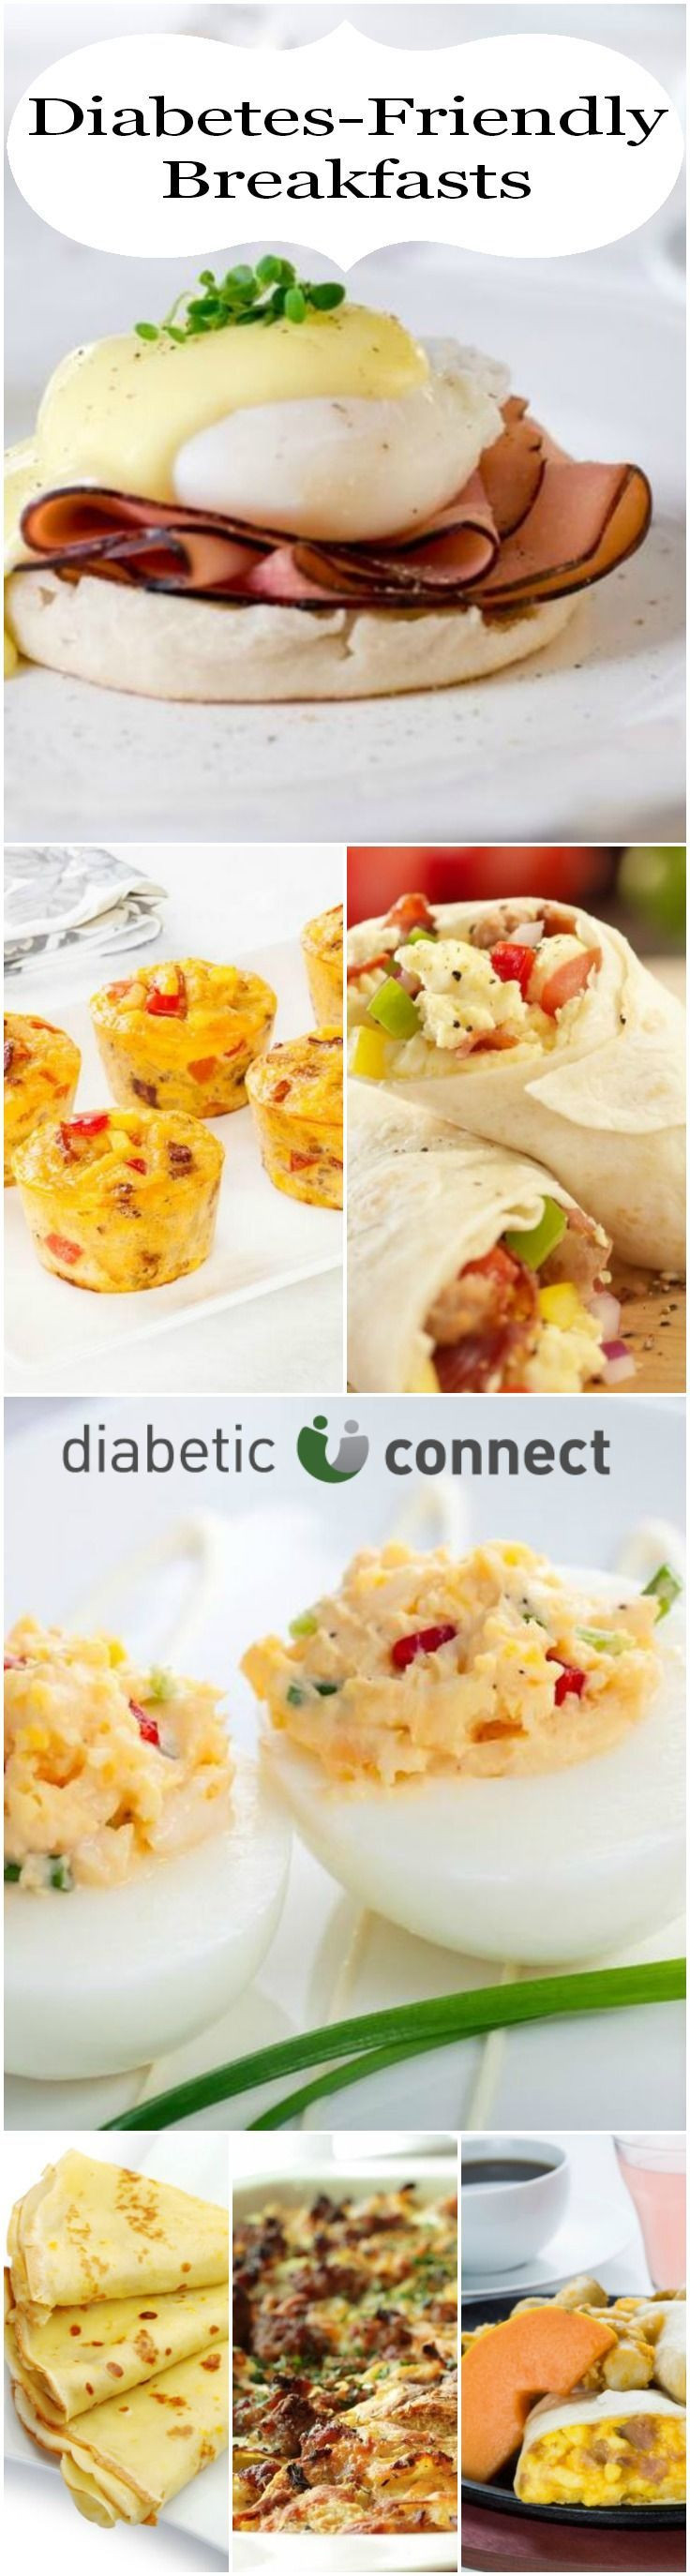 Great Diabetic Recipes
 Diabetic breakfast ideas